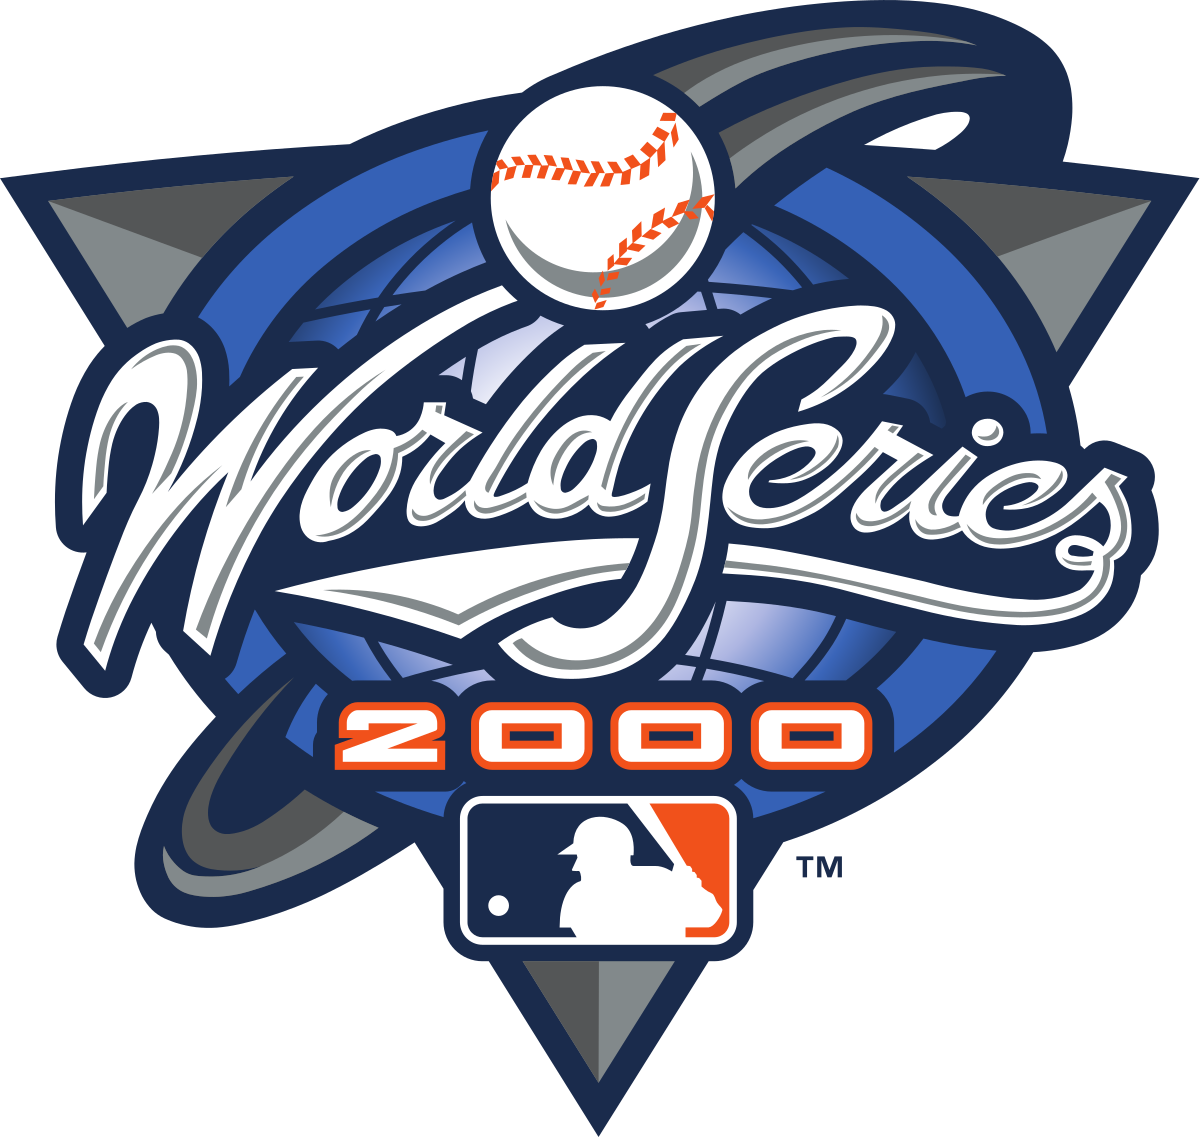 2000 World Series - Wikipedia